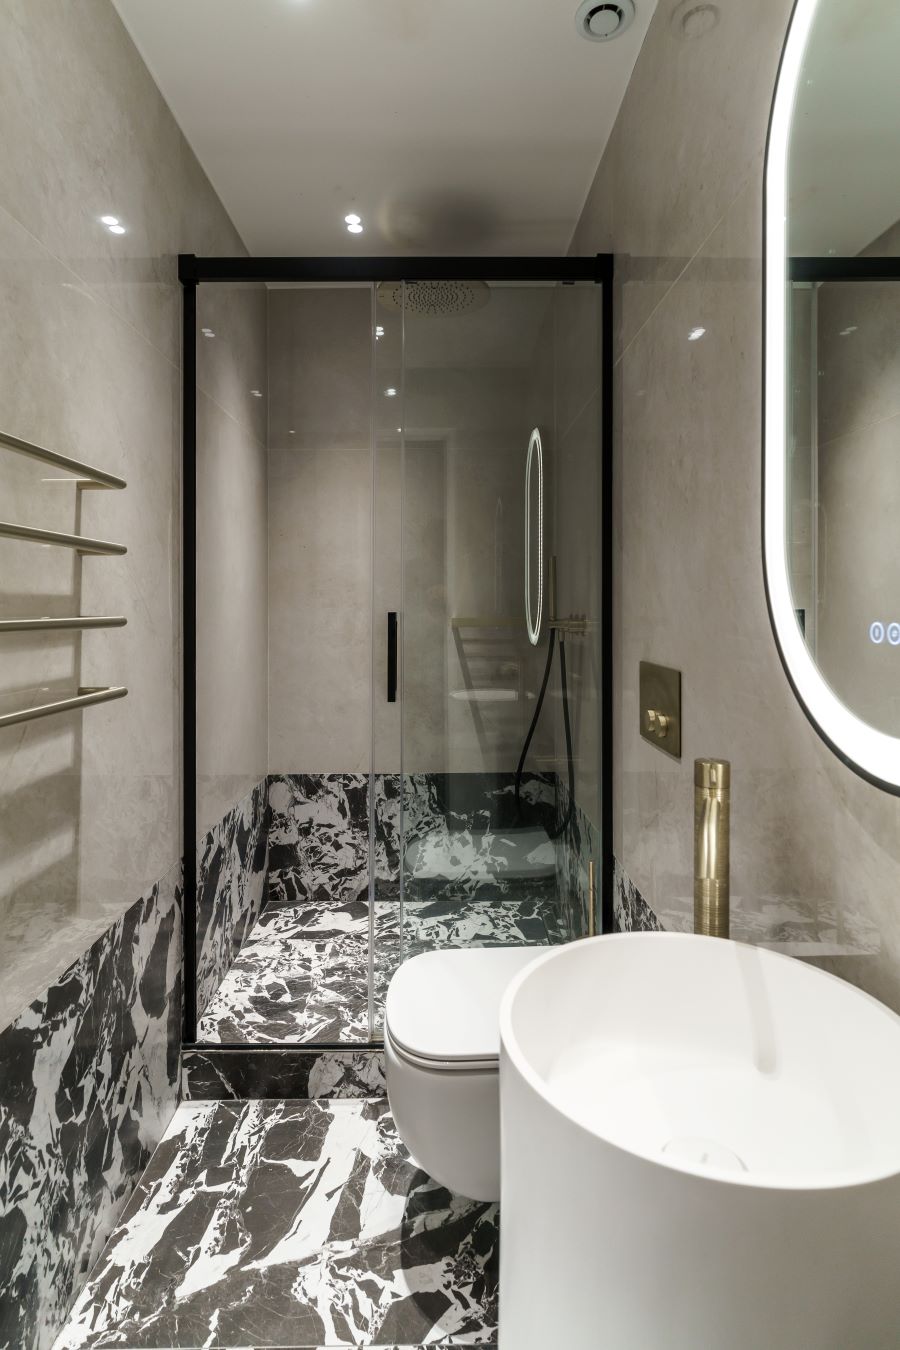 Luxusná kúpeľňa s moderným dizajnom, sprchovacím kútom a mramorovými detailmi.